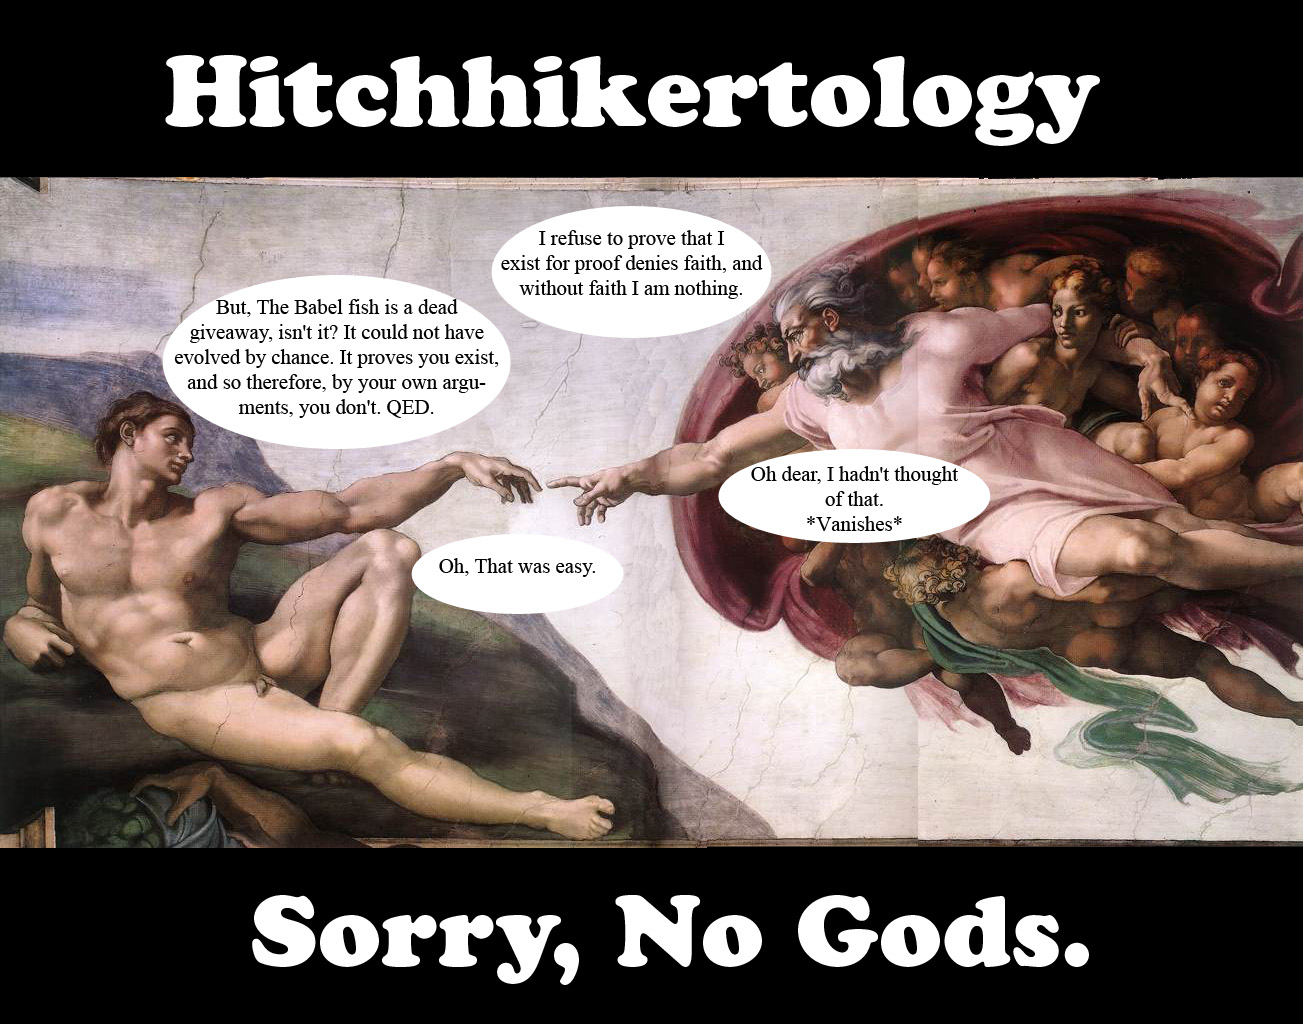 Hitchhikertology